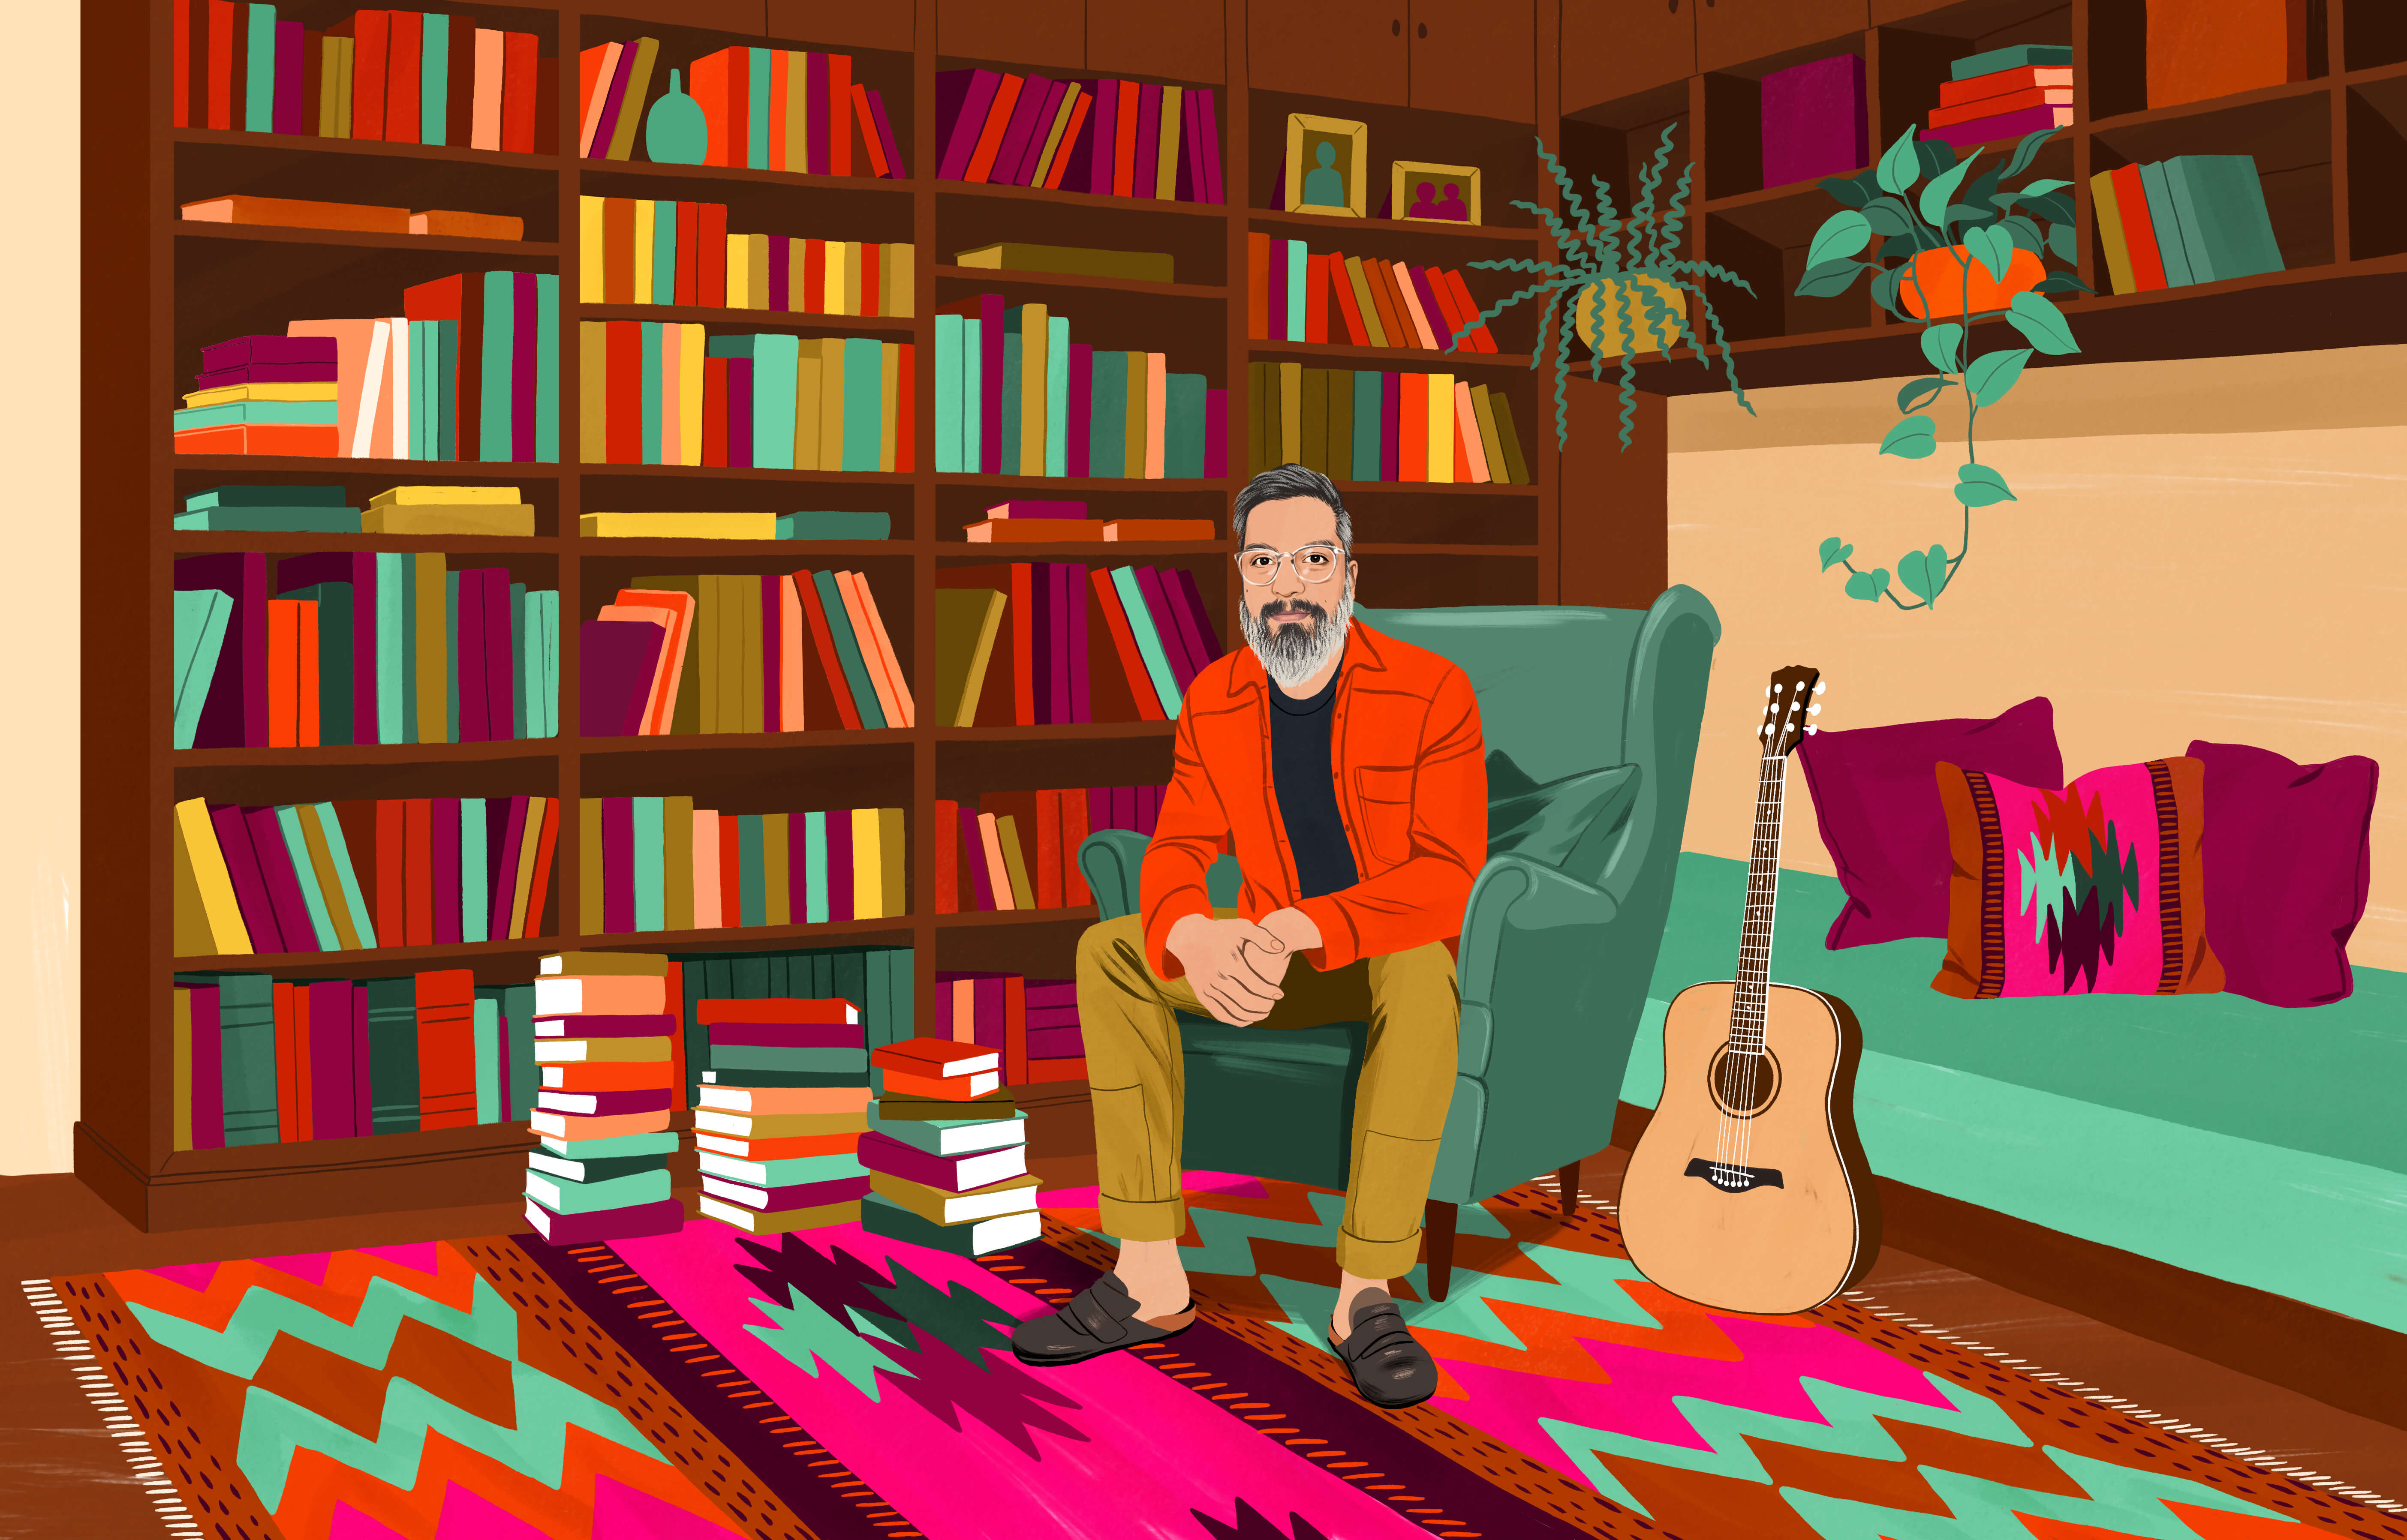 JP sentado en un sillón individual rodeado de un librero repleto de libros y algunos apilados en el suelo. En el piso hay un tapete chileno con un colorido diseño. A su lado hay una guitarra acústica.